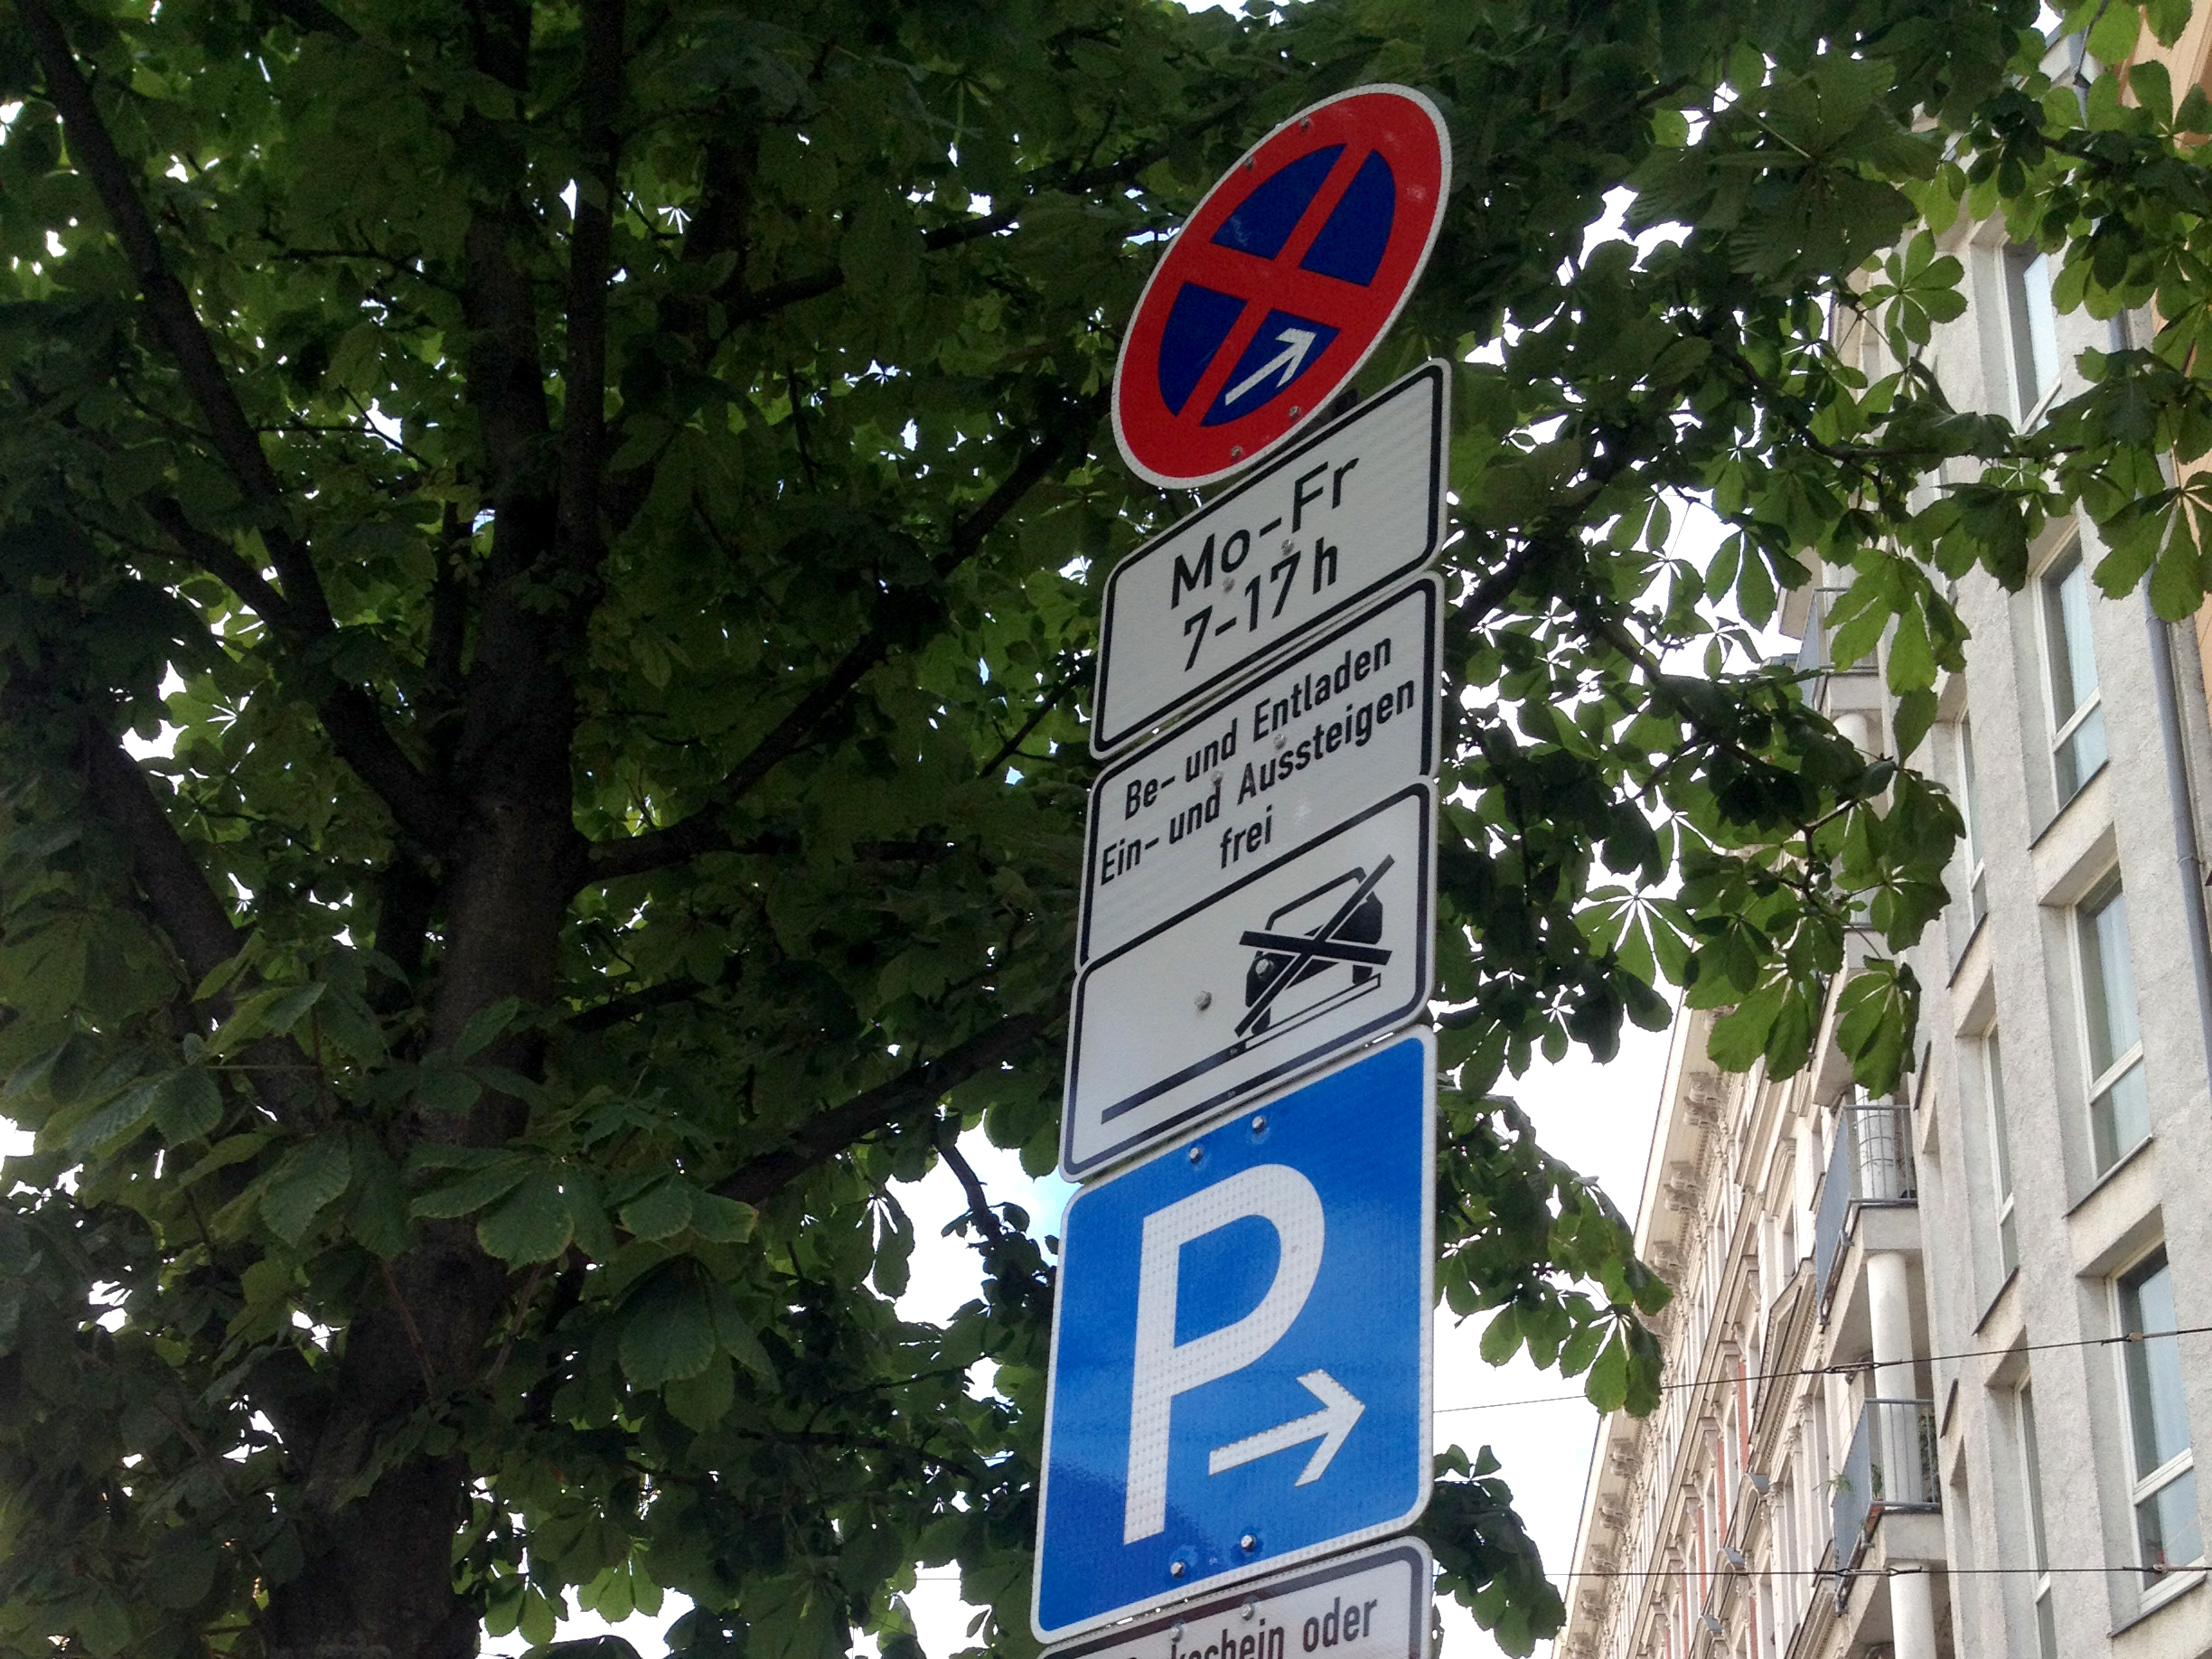 Halteverbotschilder: Regelkonformes Parken für sicheren Verkehrsfluss